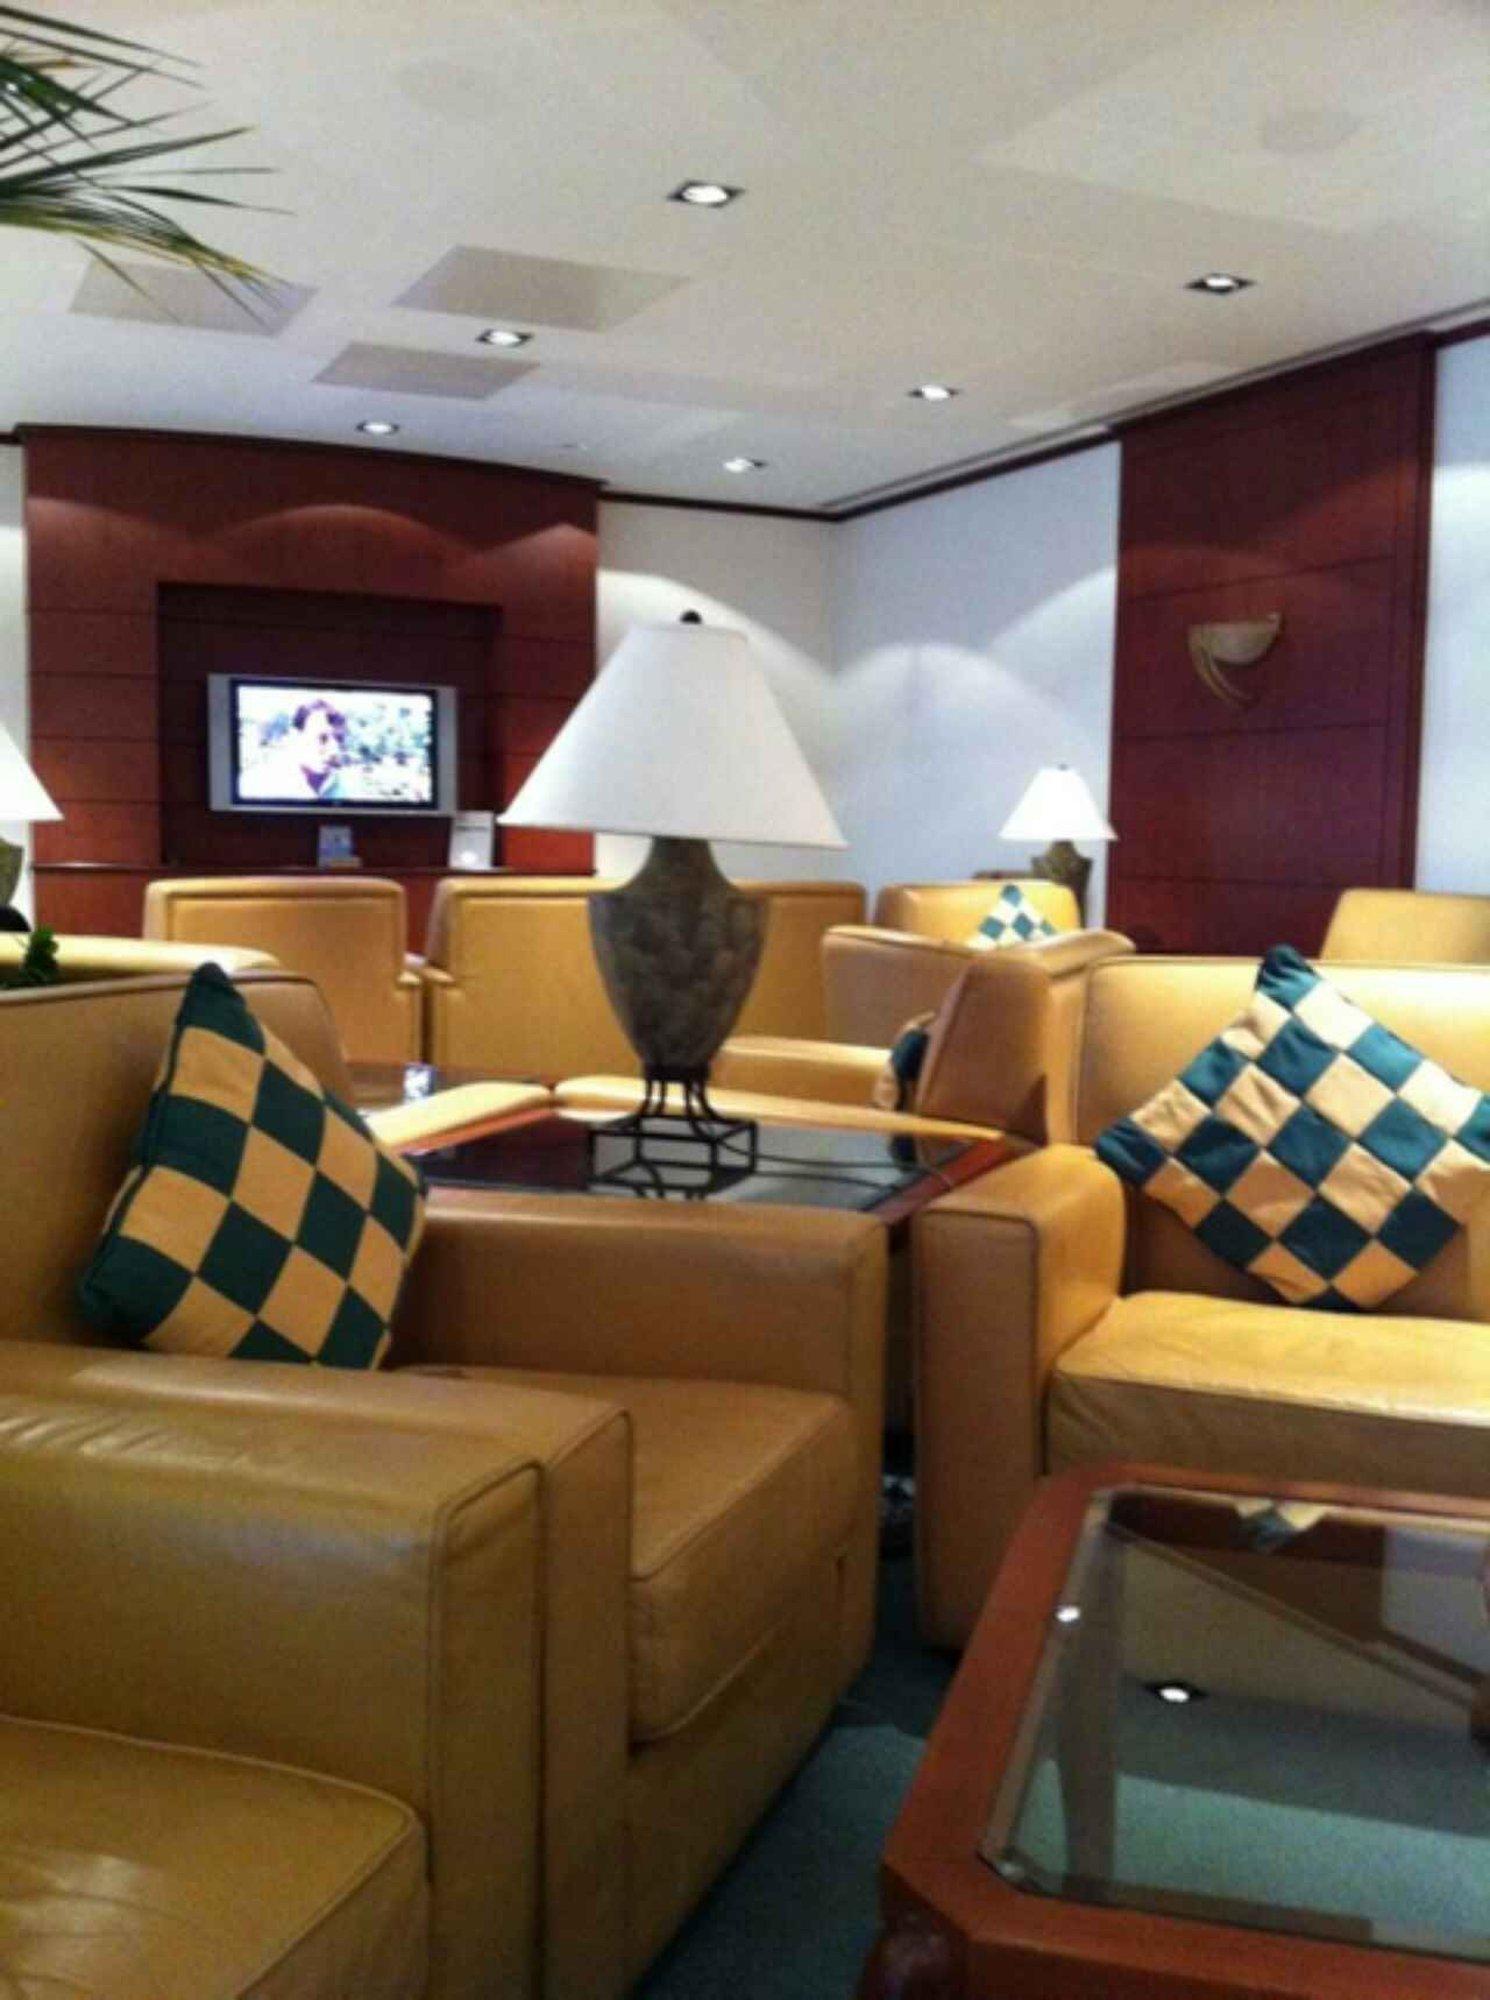 The Emirates Lounge image 4 of 10